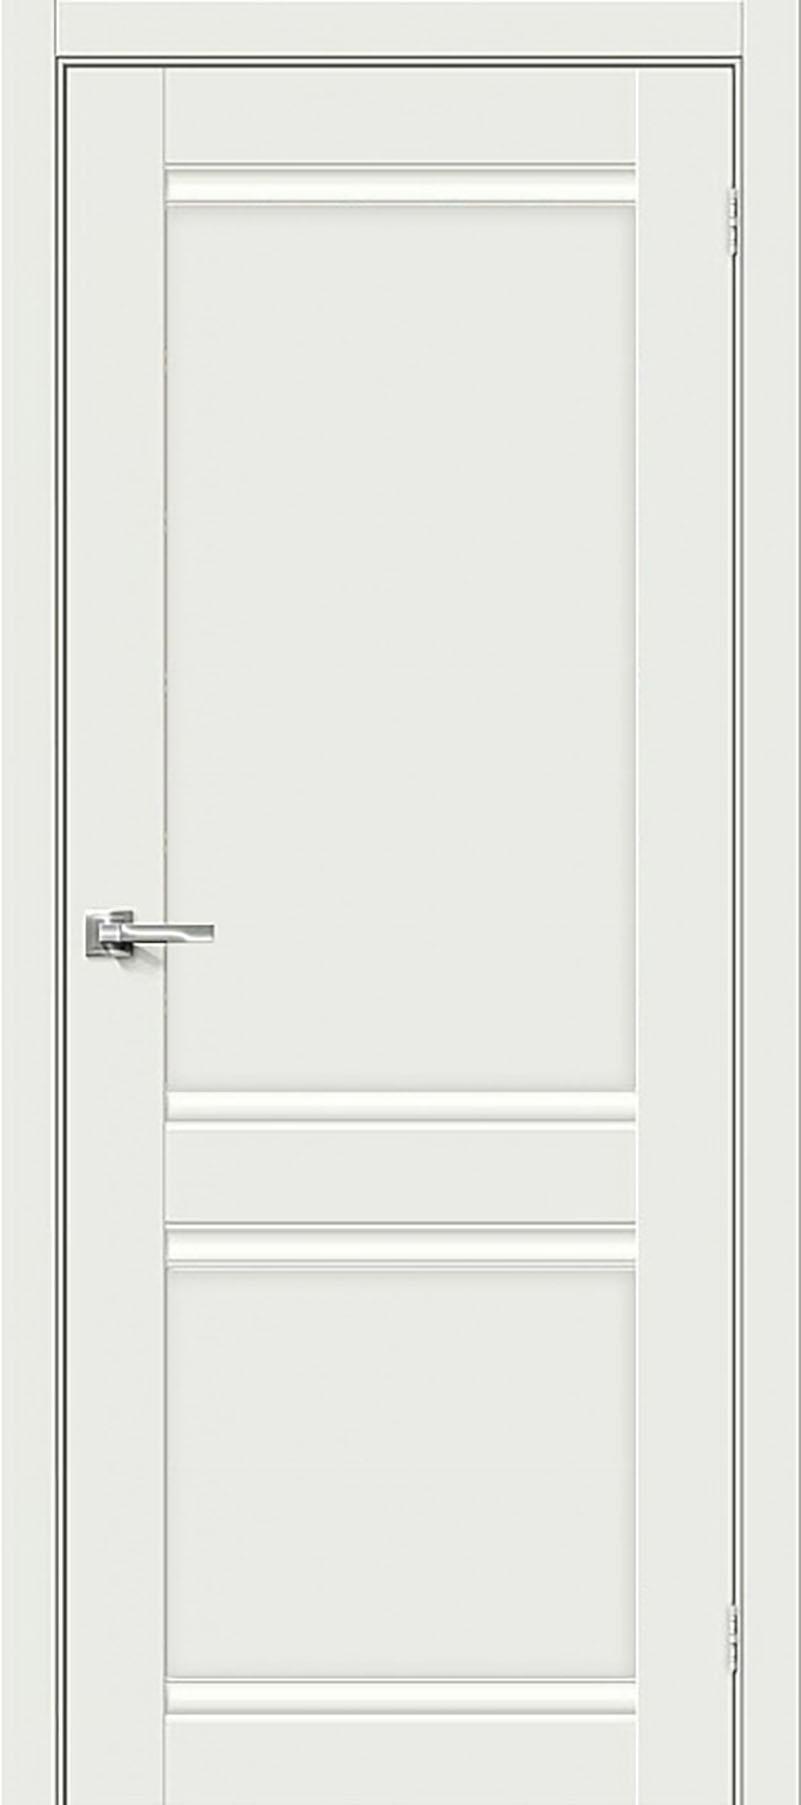 90910801 Межкомнатная дверь Парма 1211 глухая без замка и петель в комплекте 200x80см белый STLM-0420330 UBERTURE